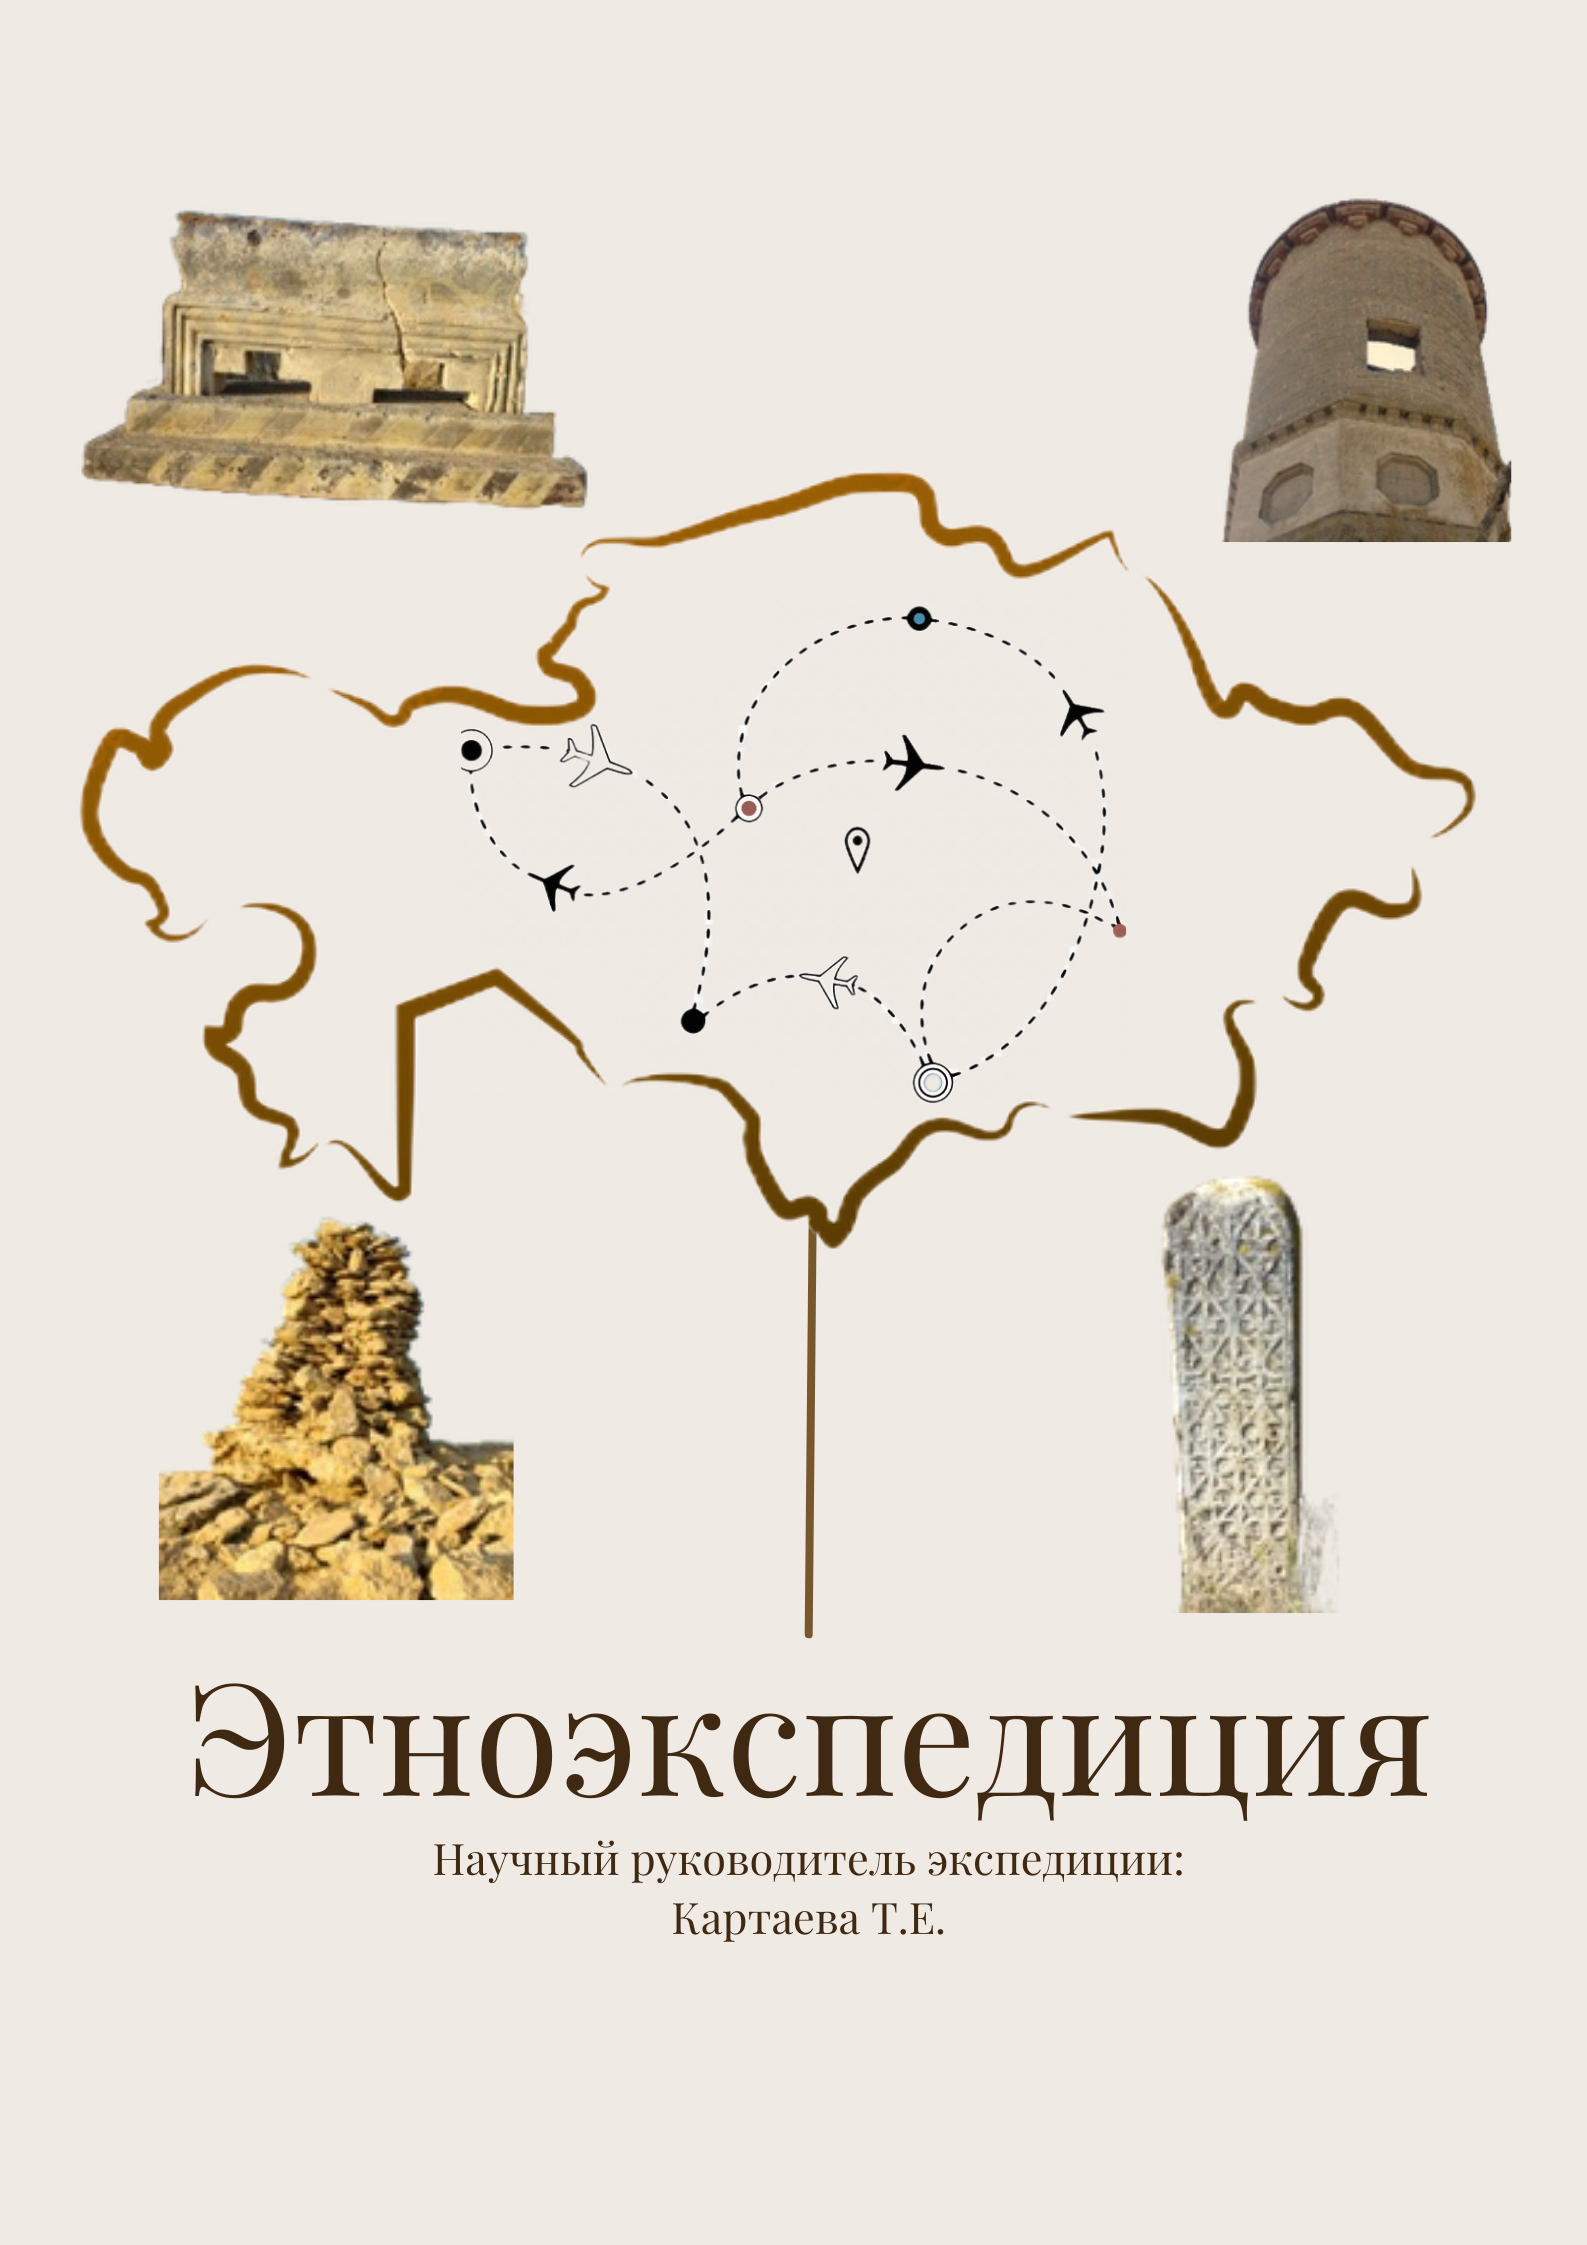 Археологии КазНУ презентовала онлайн-выставку «Этноэкспедиция»